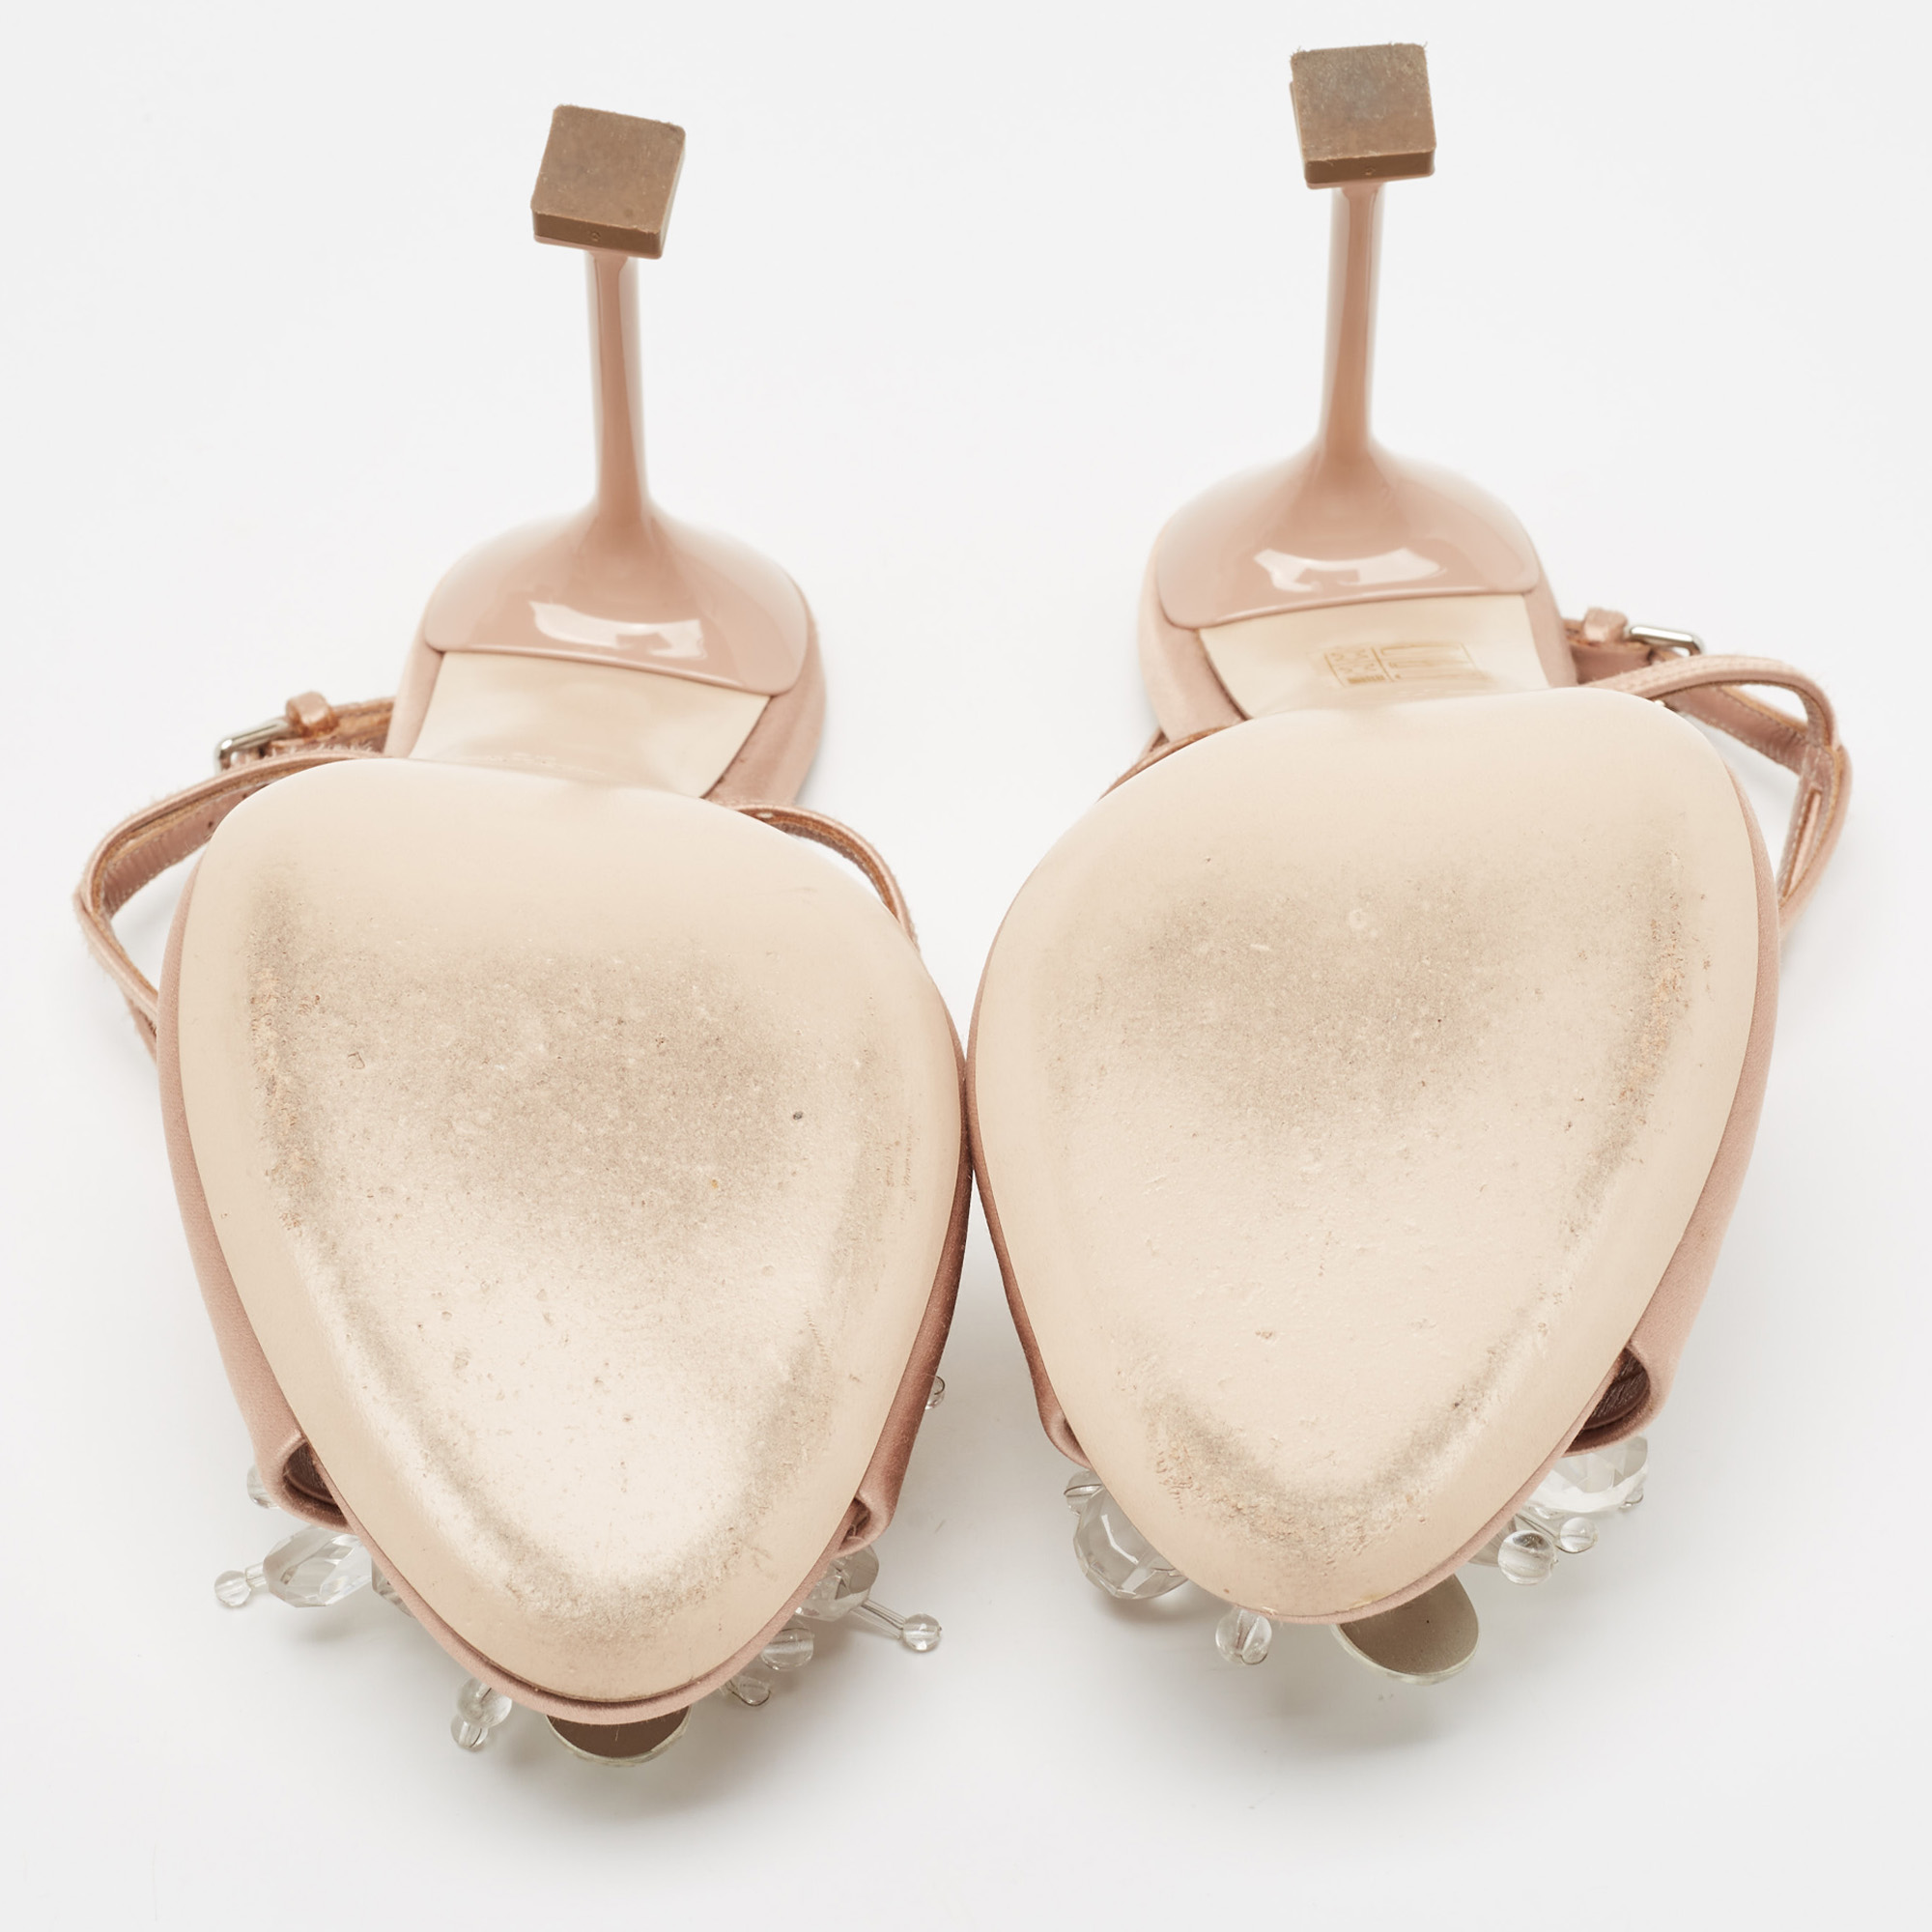 Miu Miu Beige Satin Crystal Embellished Ankle Strap Sandals Size 39